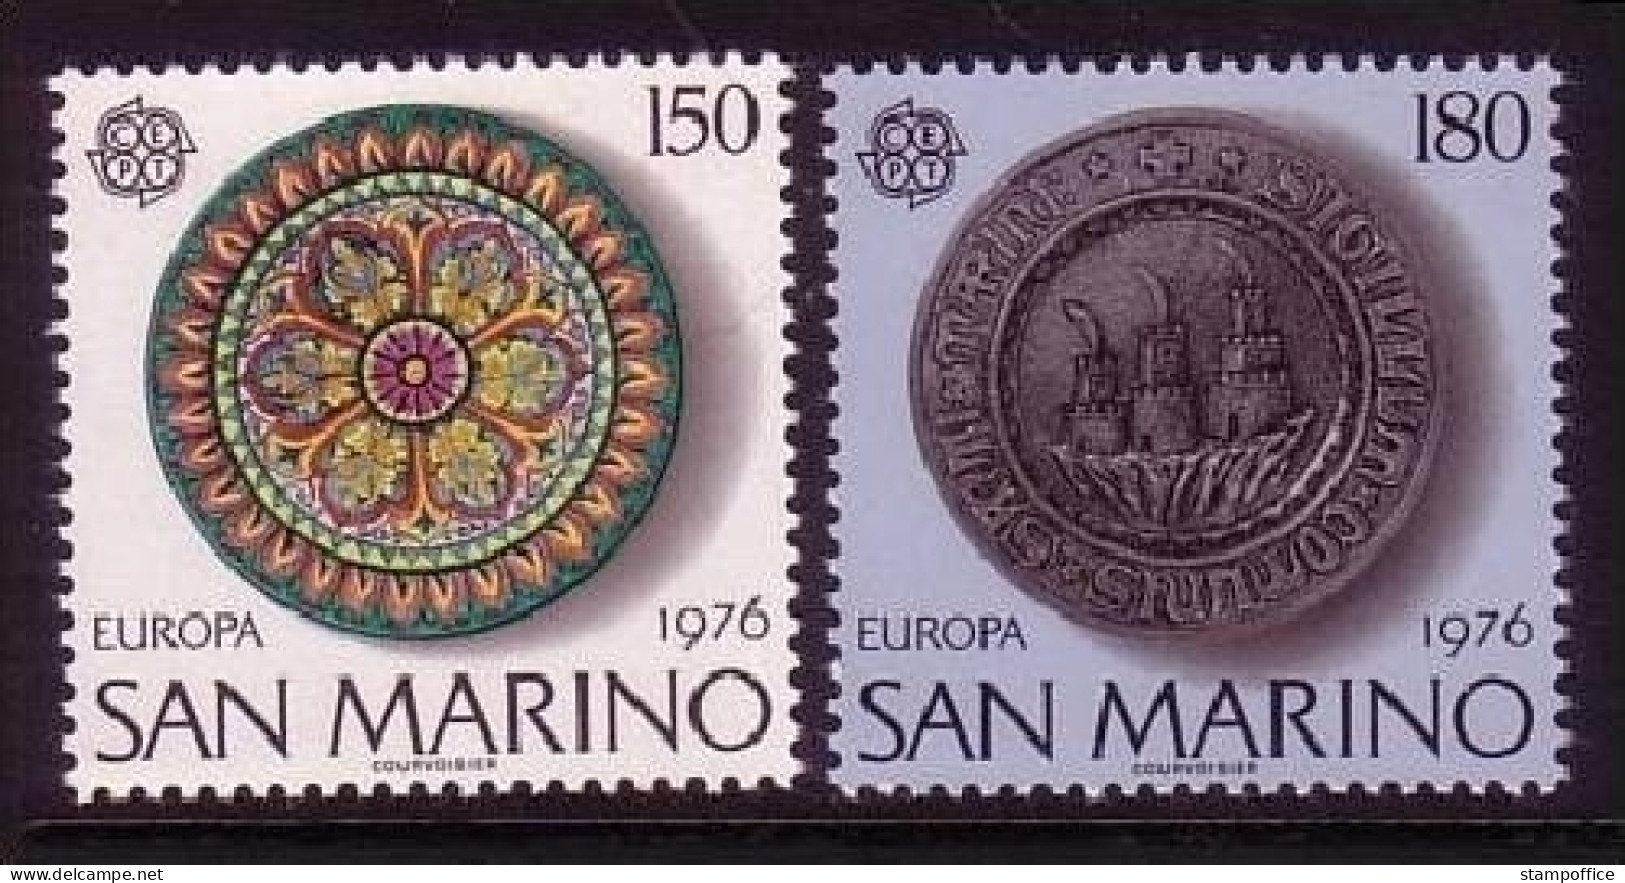 SAN MARINO MI-NR. 1119-1120 POSTFRISCH(MINT) EUROPA 1976 - KUNSTHANDWERK - 1976